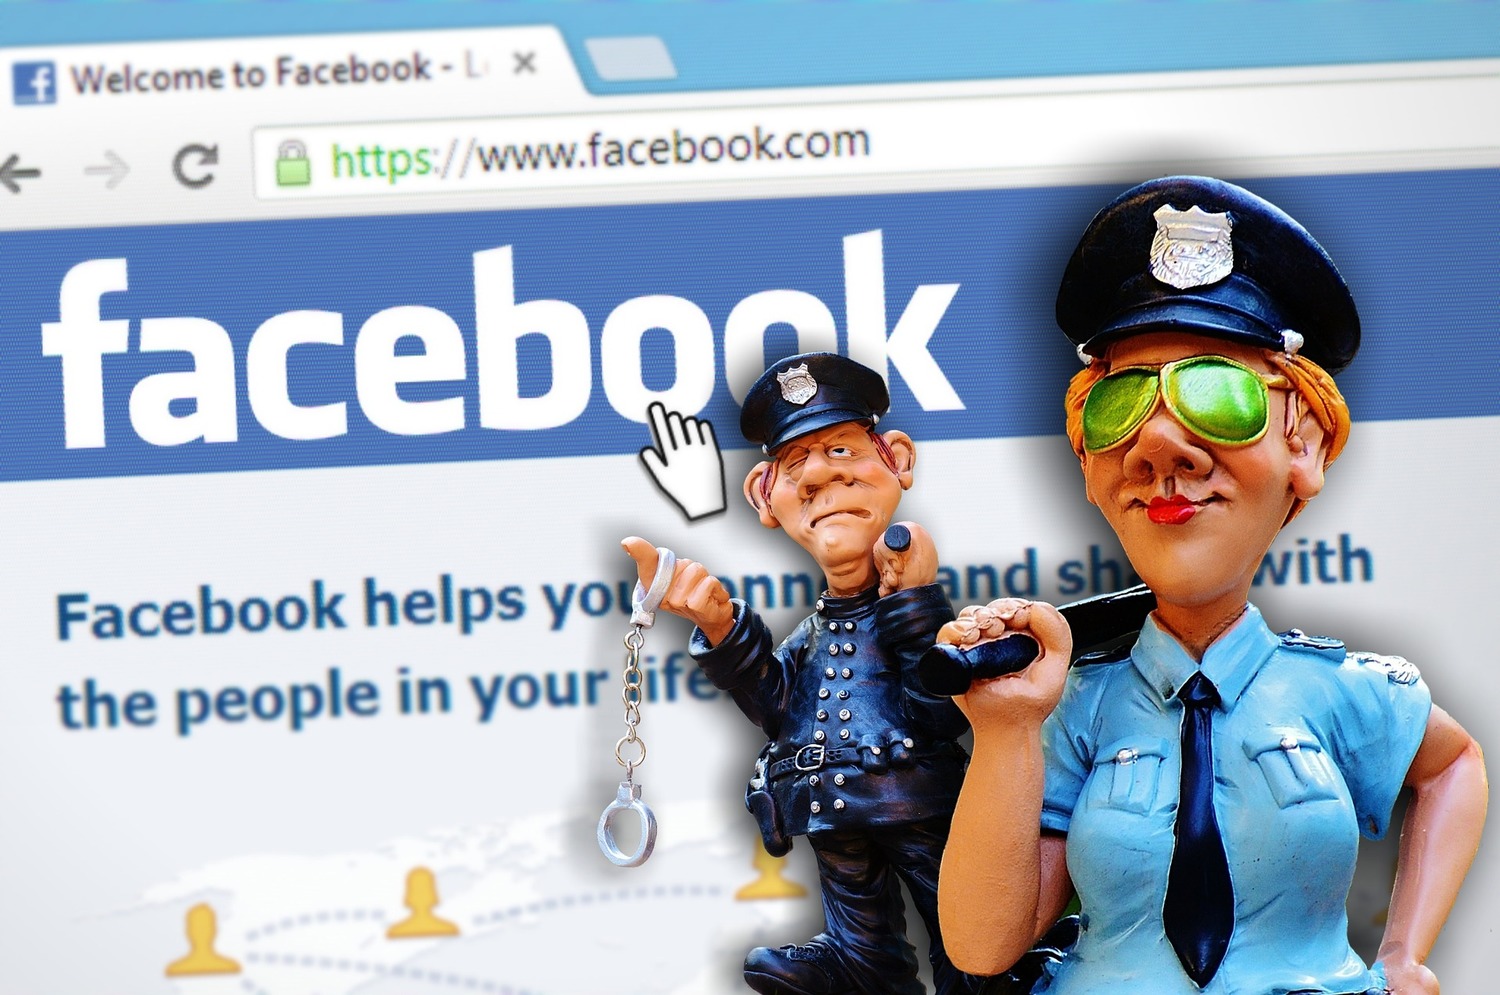 若facebook用戶的照片、影片或貼文因違反使用規定而遭刪除，用戶將有申訴的權利。